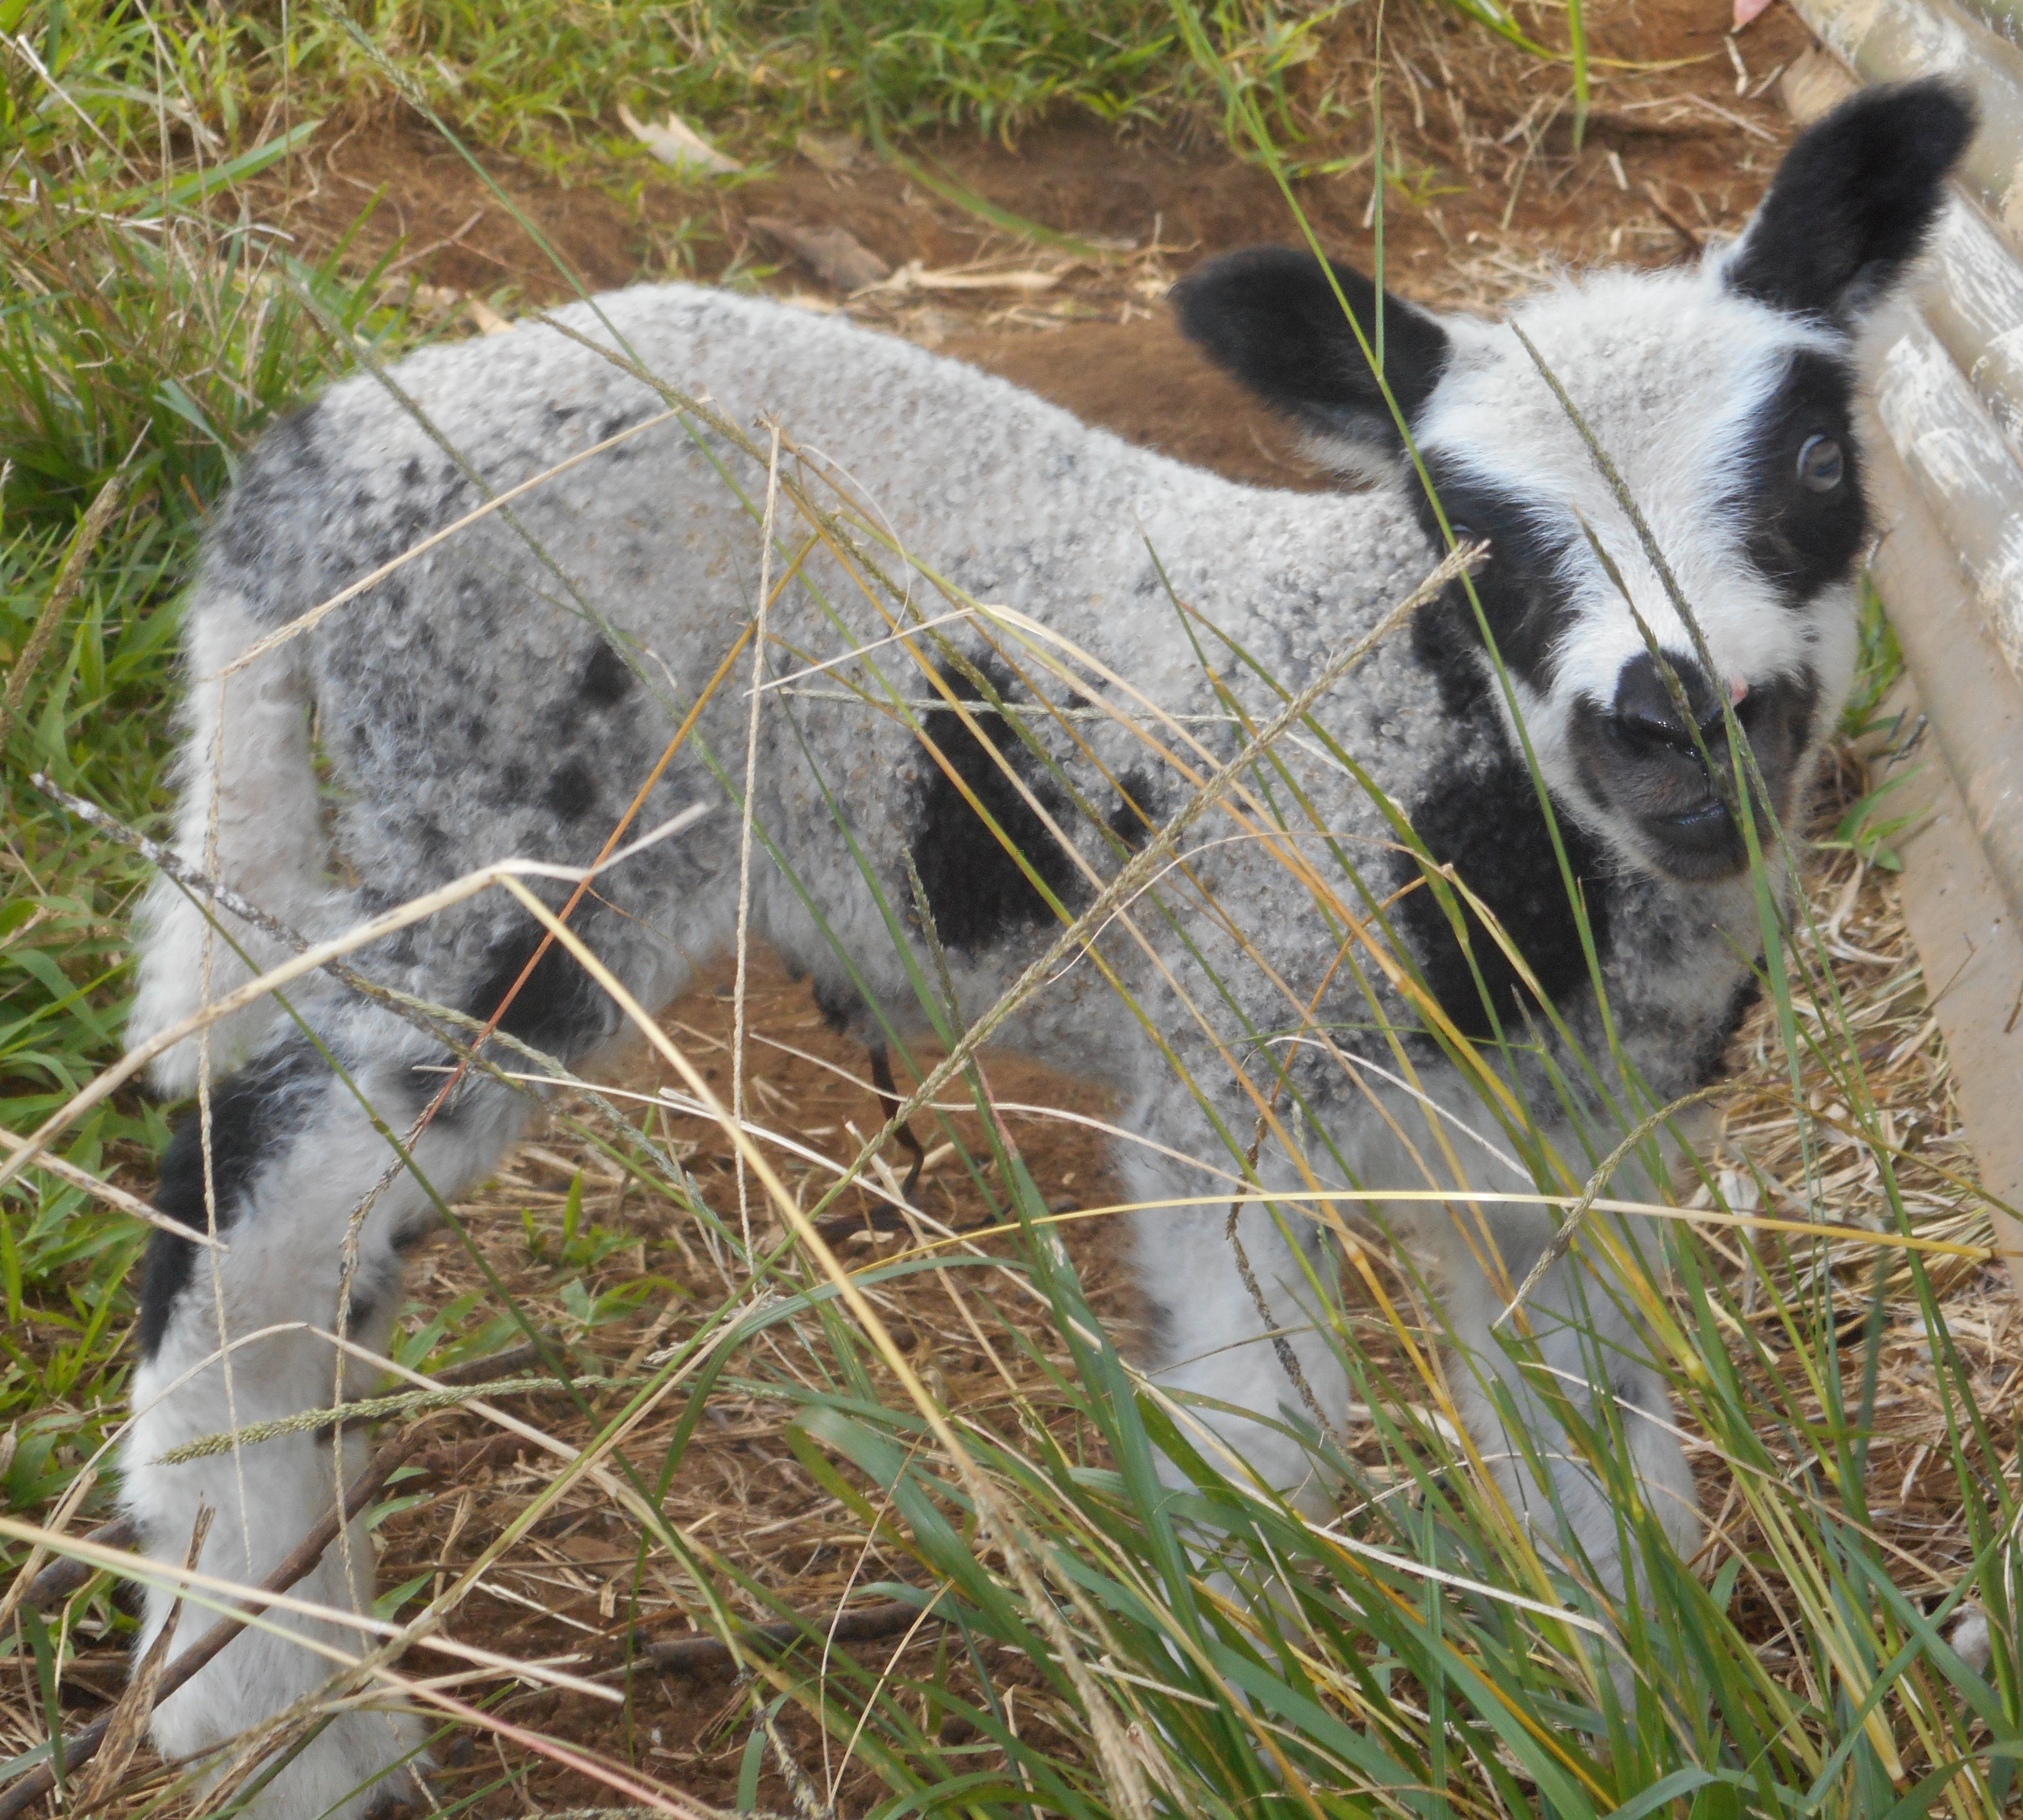 May's 2nd born lamb